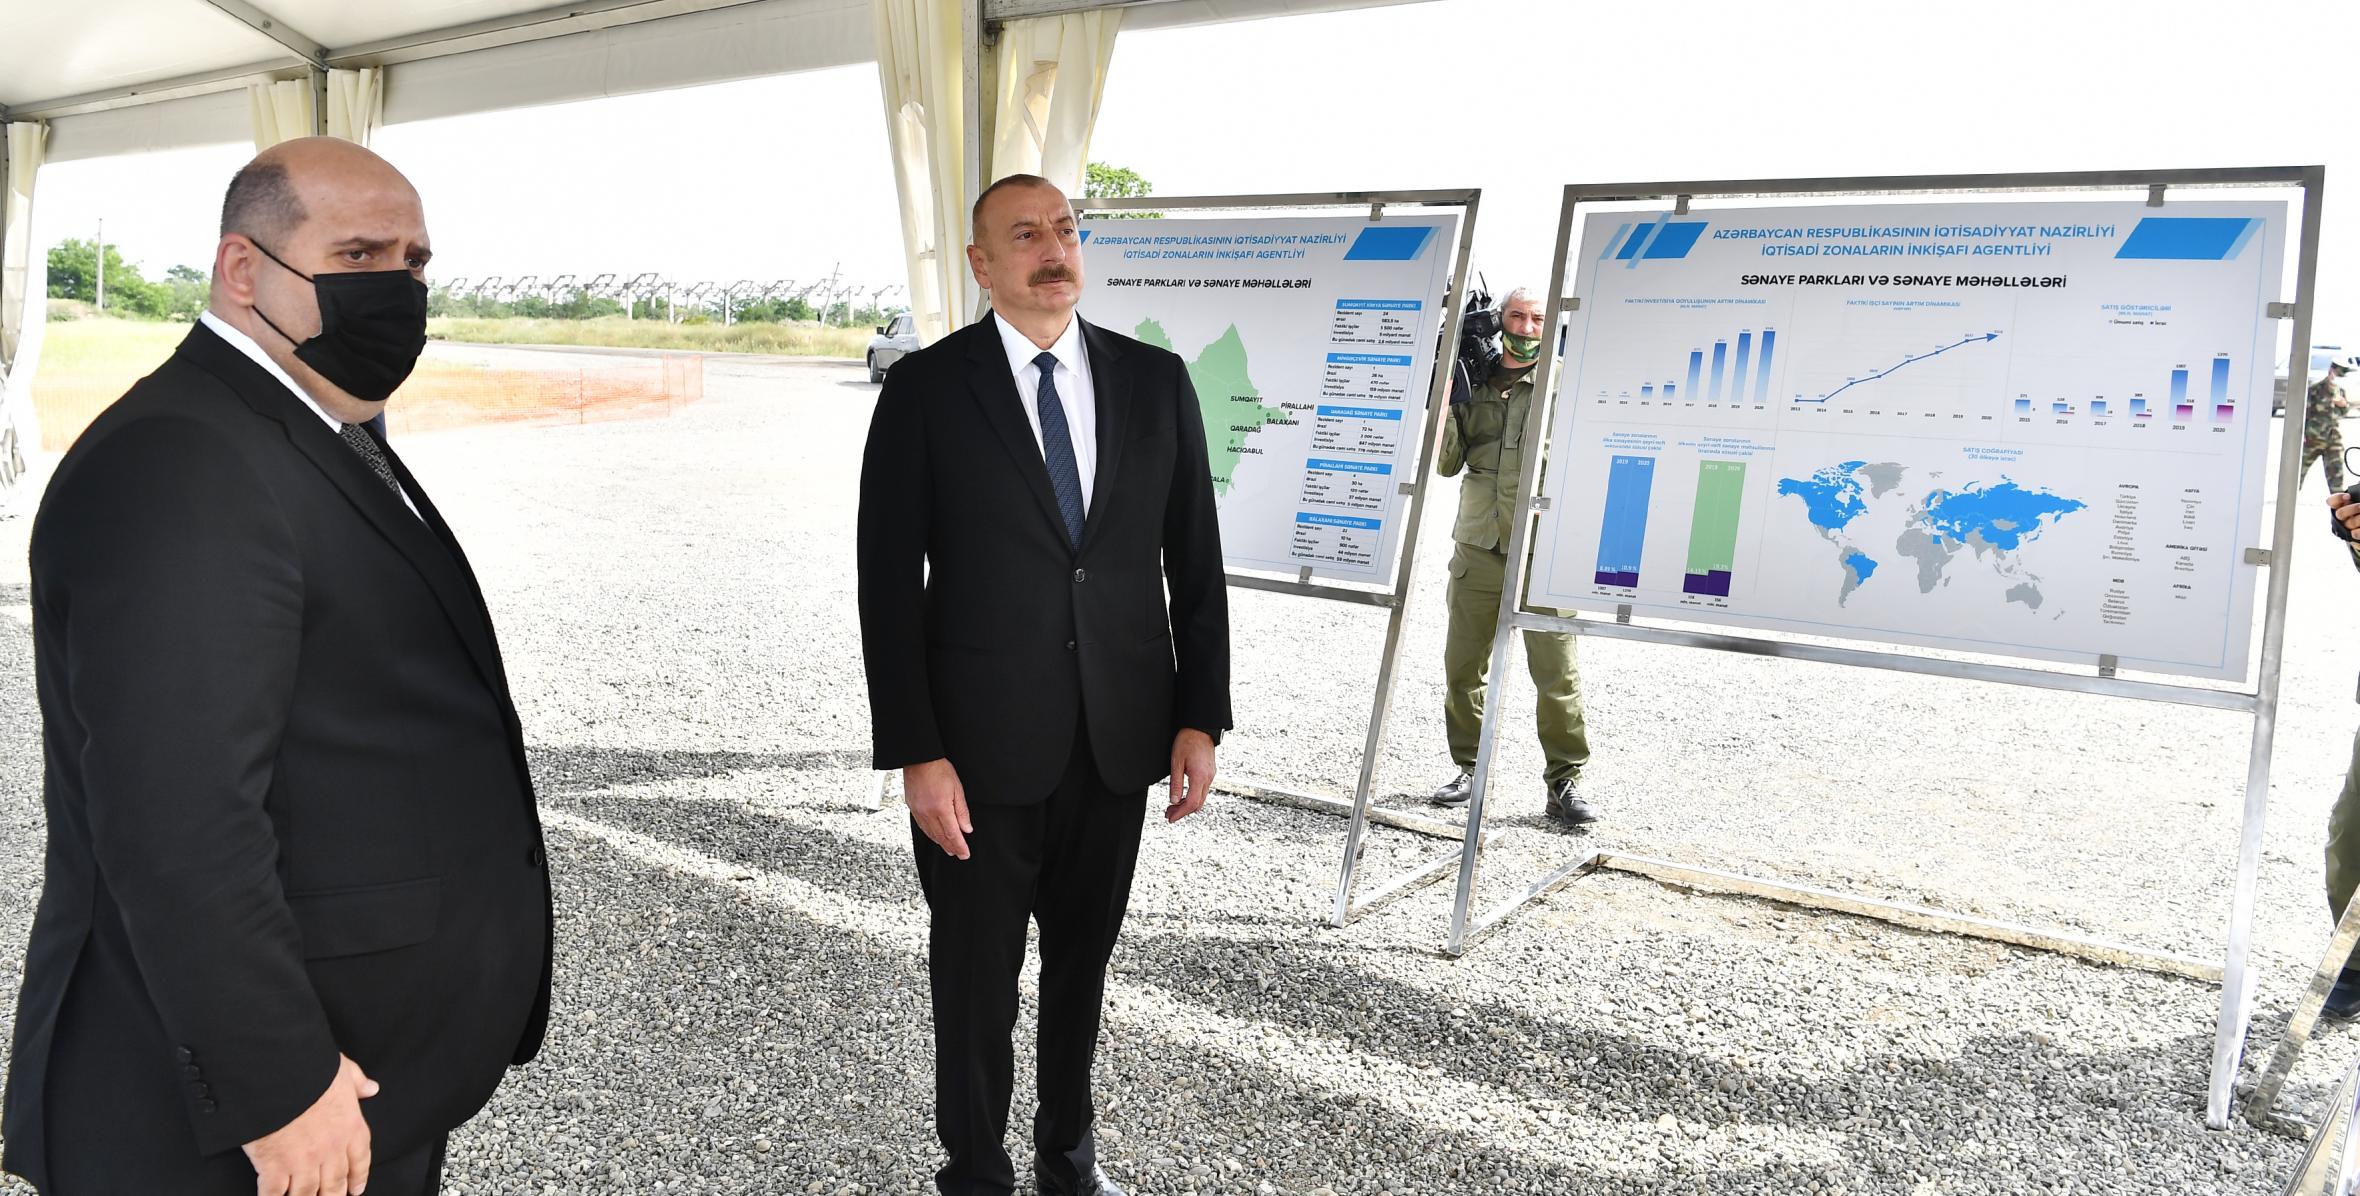 Ильхам Алиев принял участие в церемонии закладки фундамента Агдамского промышленного парка